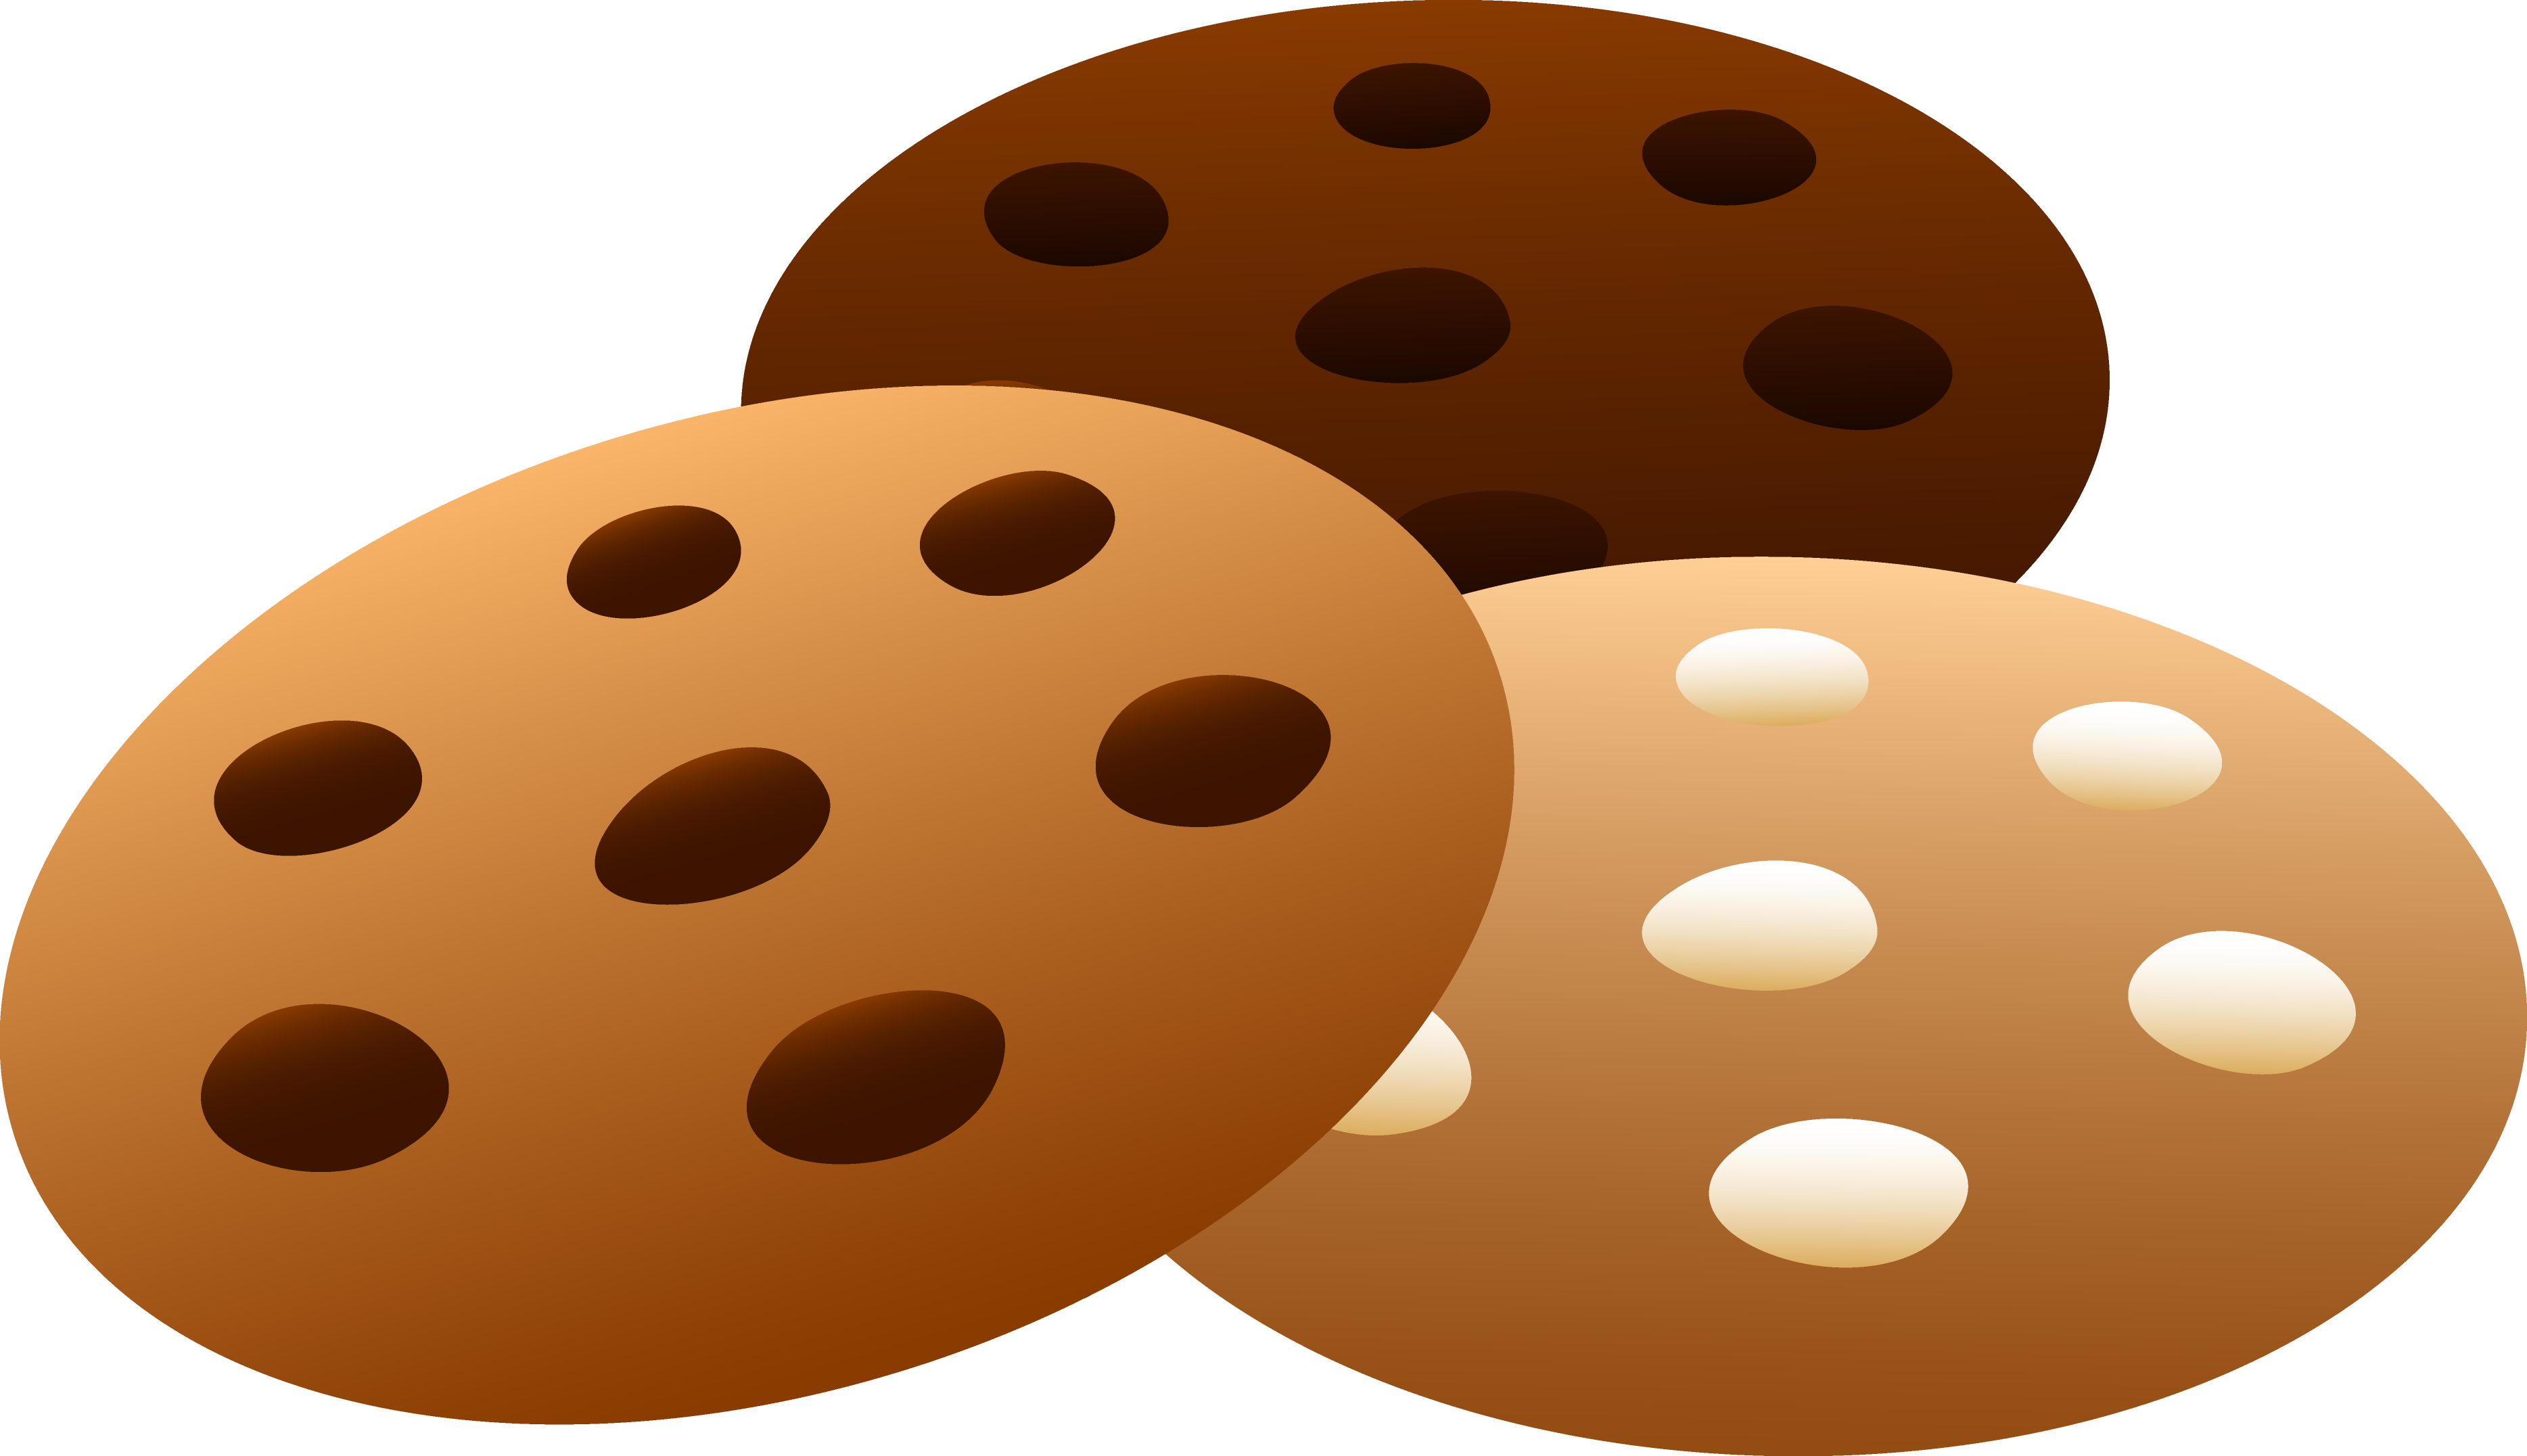 Three Flavors Of Cookies Free Clip Art U0026middot - Vauxhall (3736x2153)